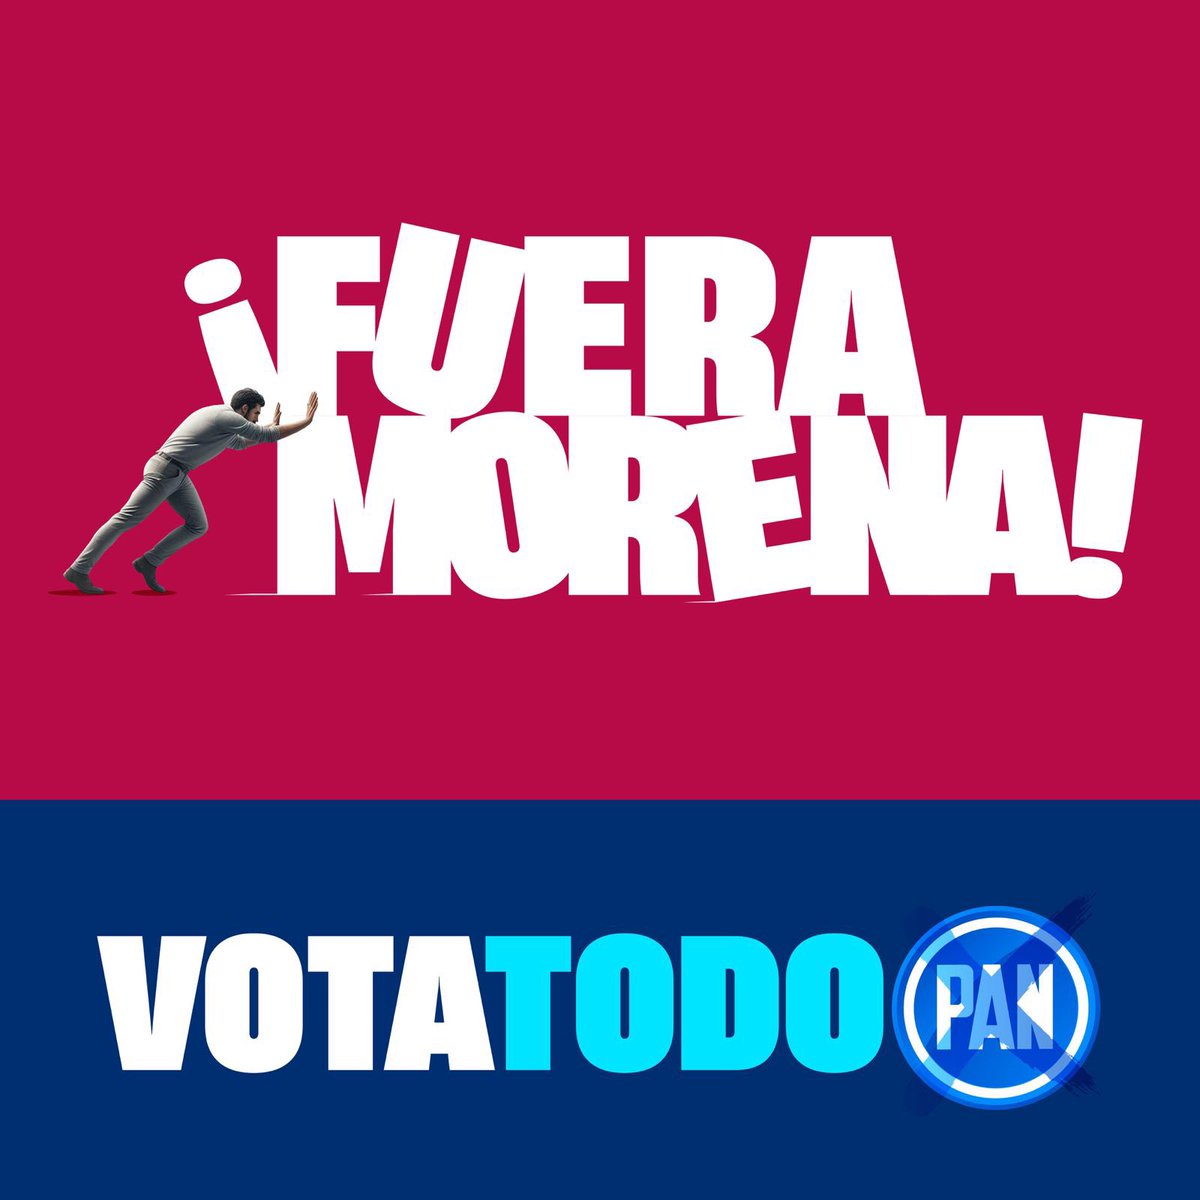 El cambio viene !! Que la alegría y esperanza de una mejor ciudad no se vean truncadas, SAL y VOTA; este 2 de junio, vota por tu seguridad, por las instituciones, por mejores servicios de salud, vota por energías limpias, vota por TI Vota por @STaboadaMx y @XochitlGalvez